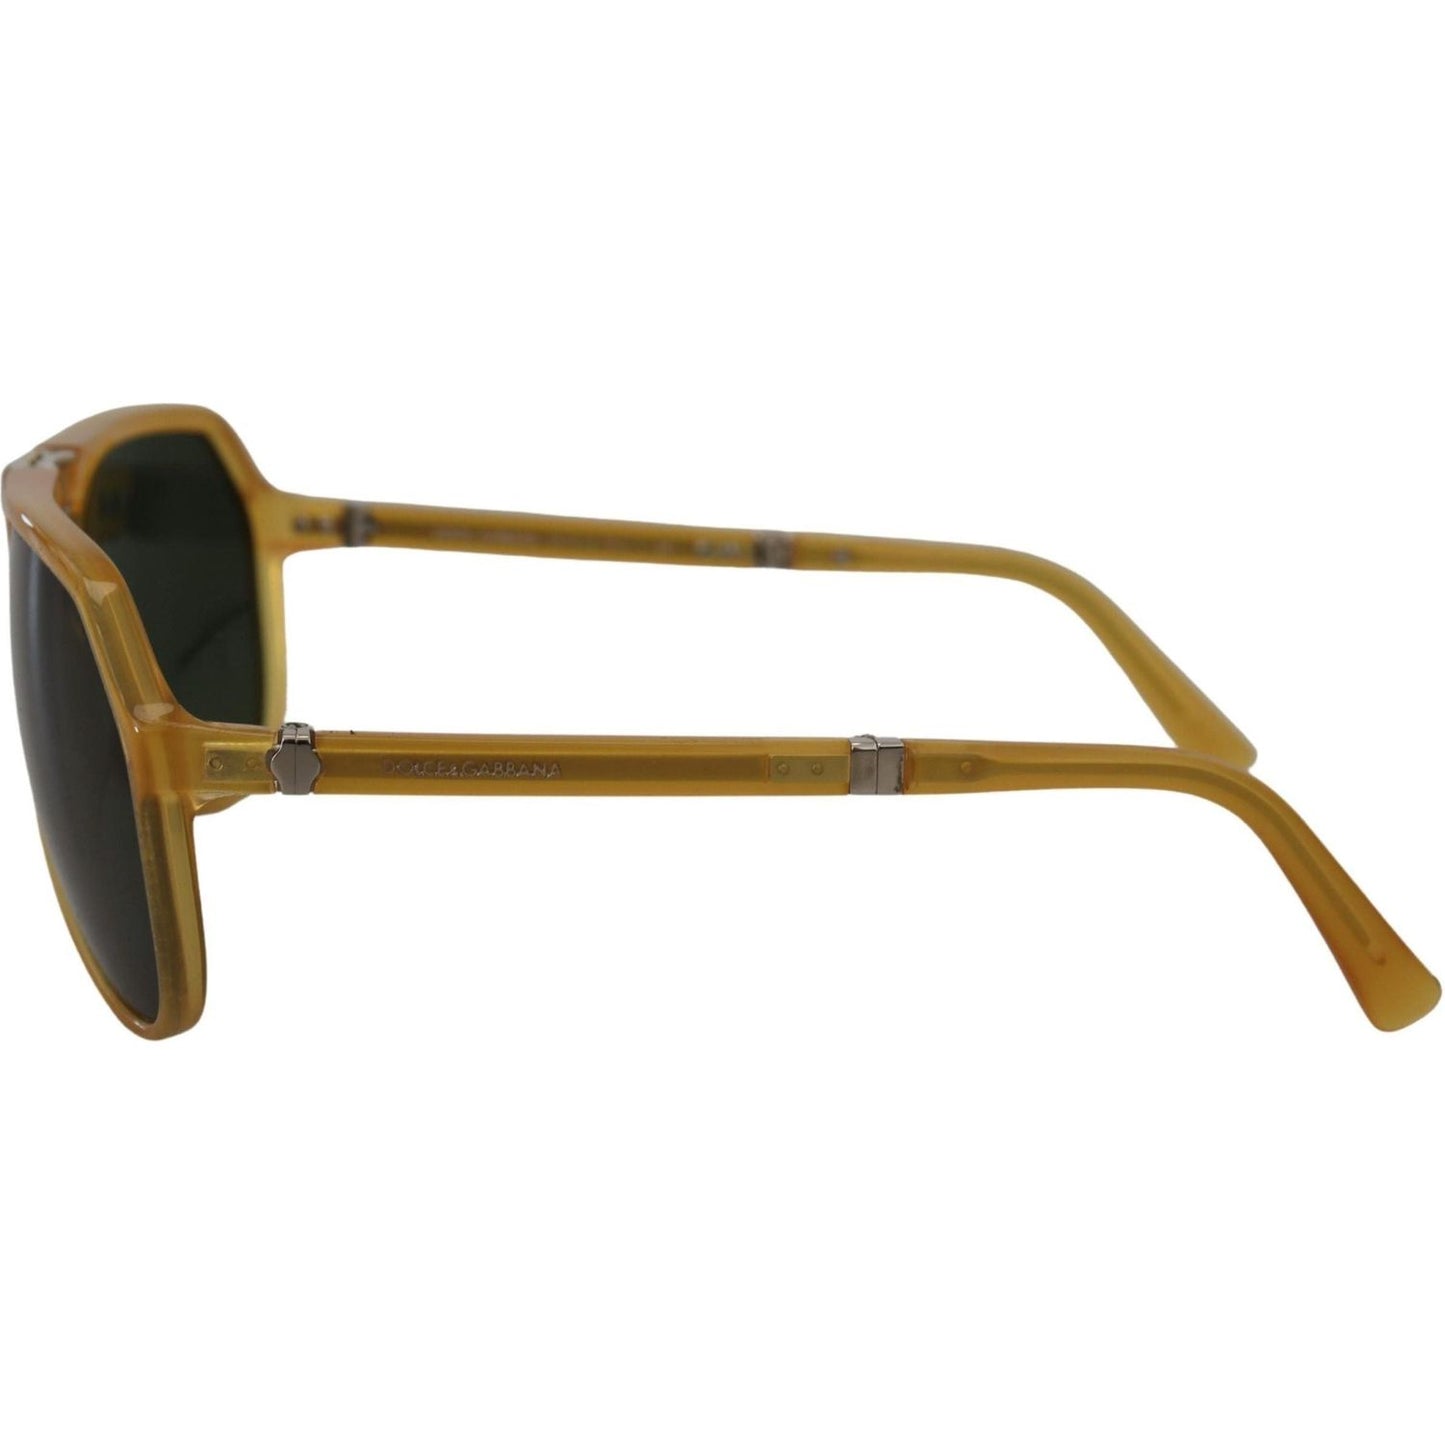 Dolce & Gabbana Chic Yellow Aviator Acetate Sunglasses yellow-acetate-black-lens-aviator-dg4196-sunglasses